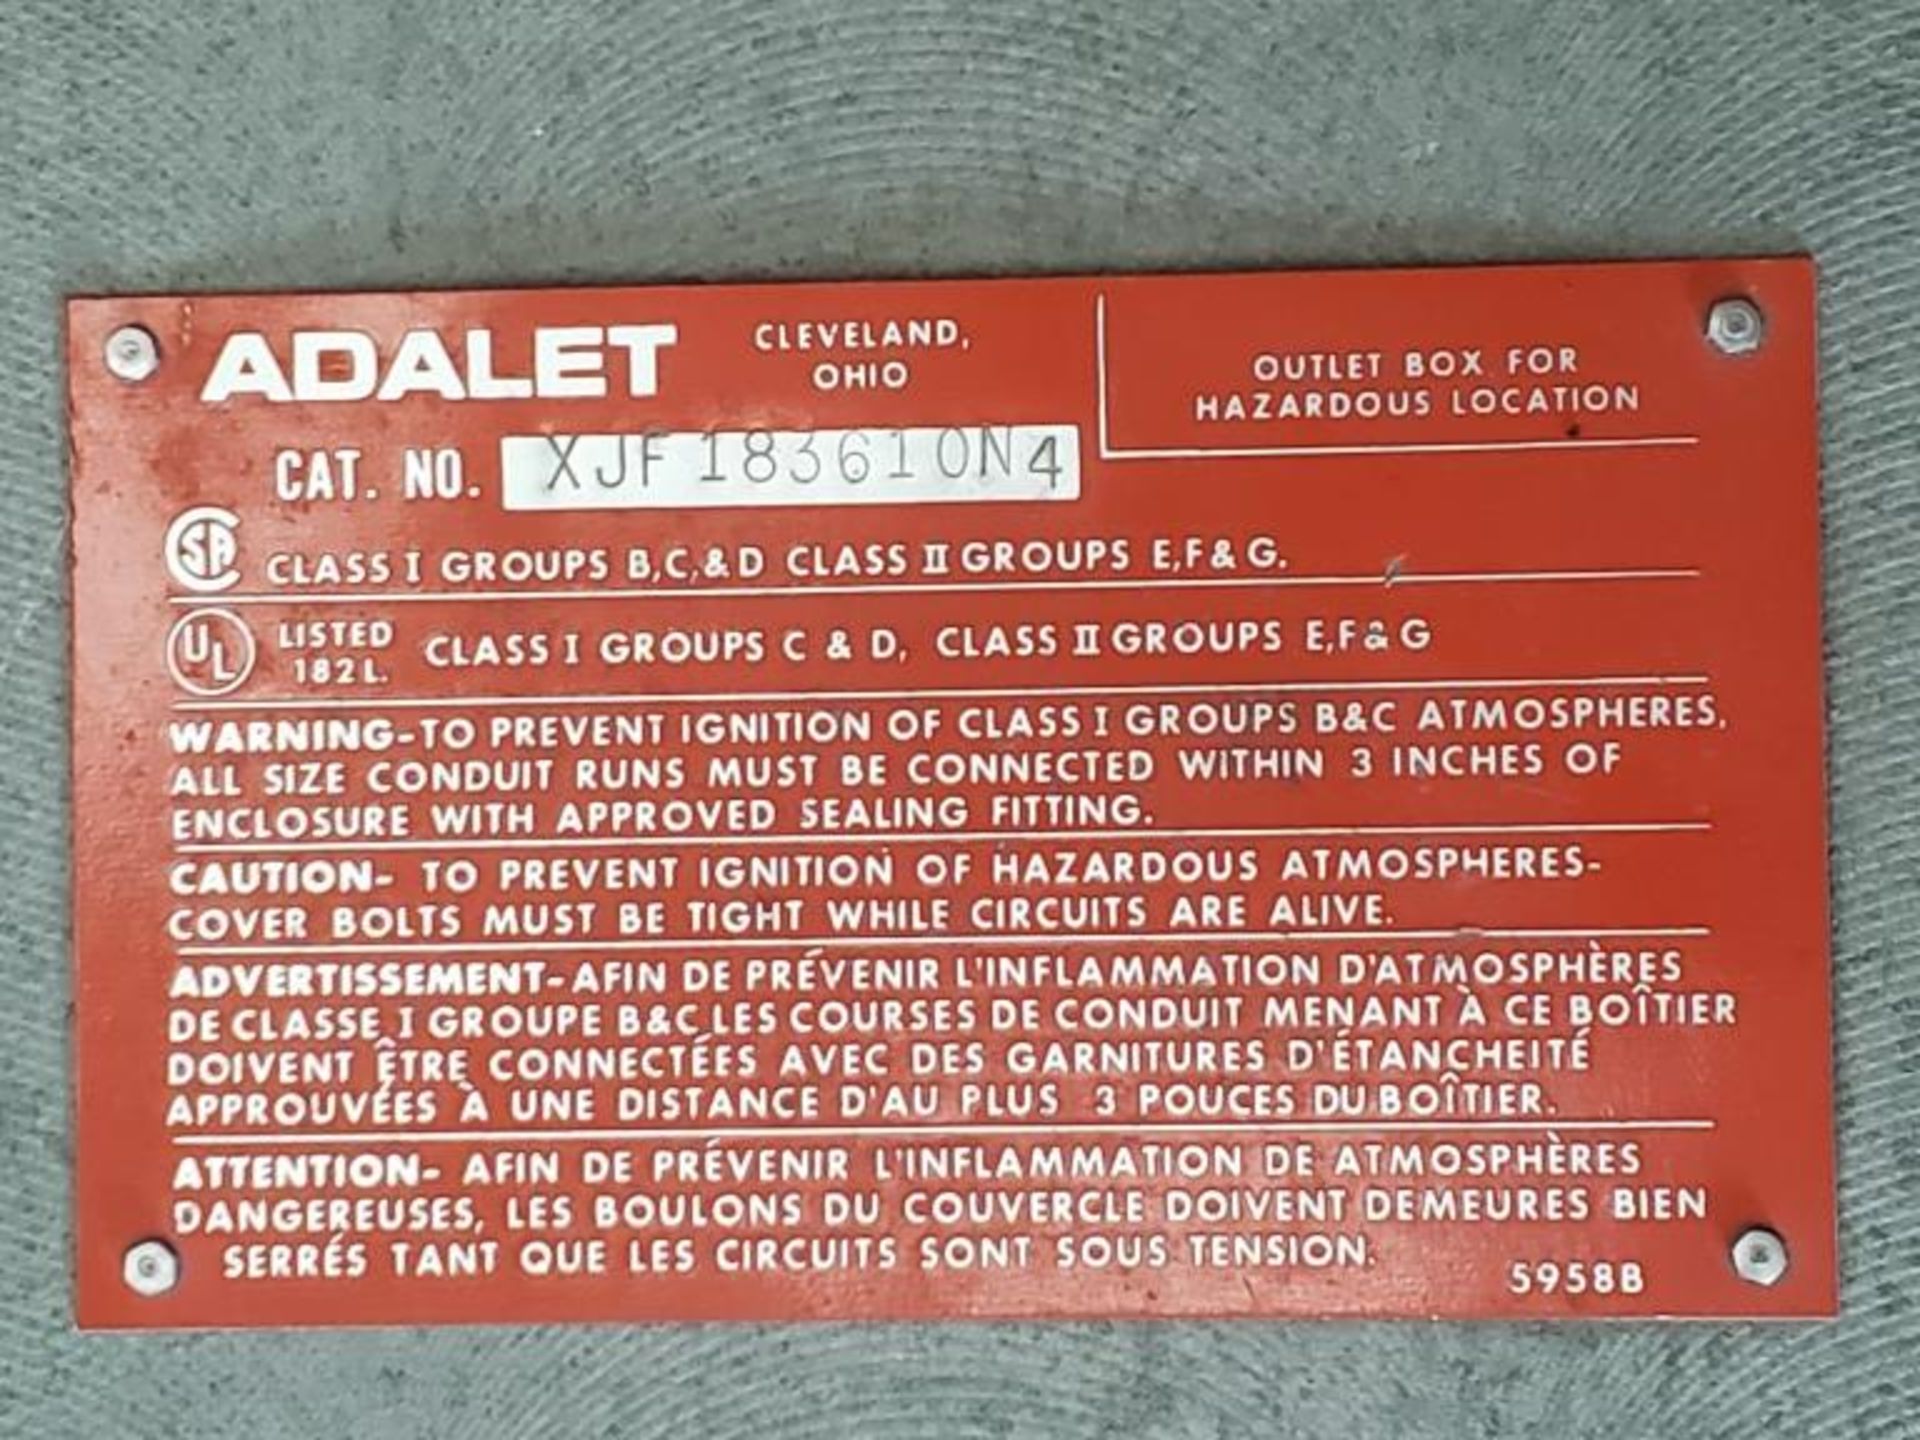 Adalet Model XJF183610N4 - Image 7 of 9